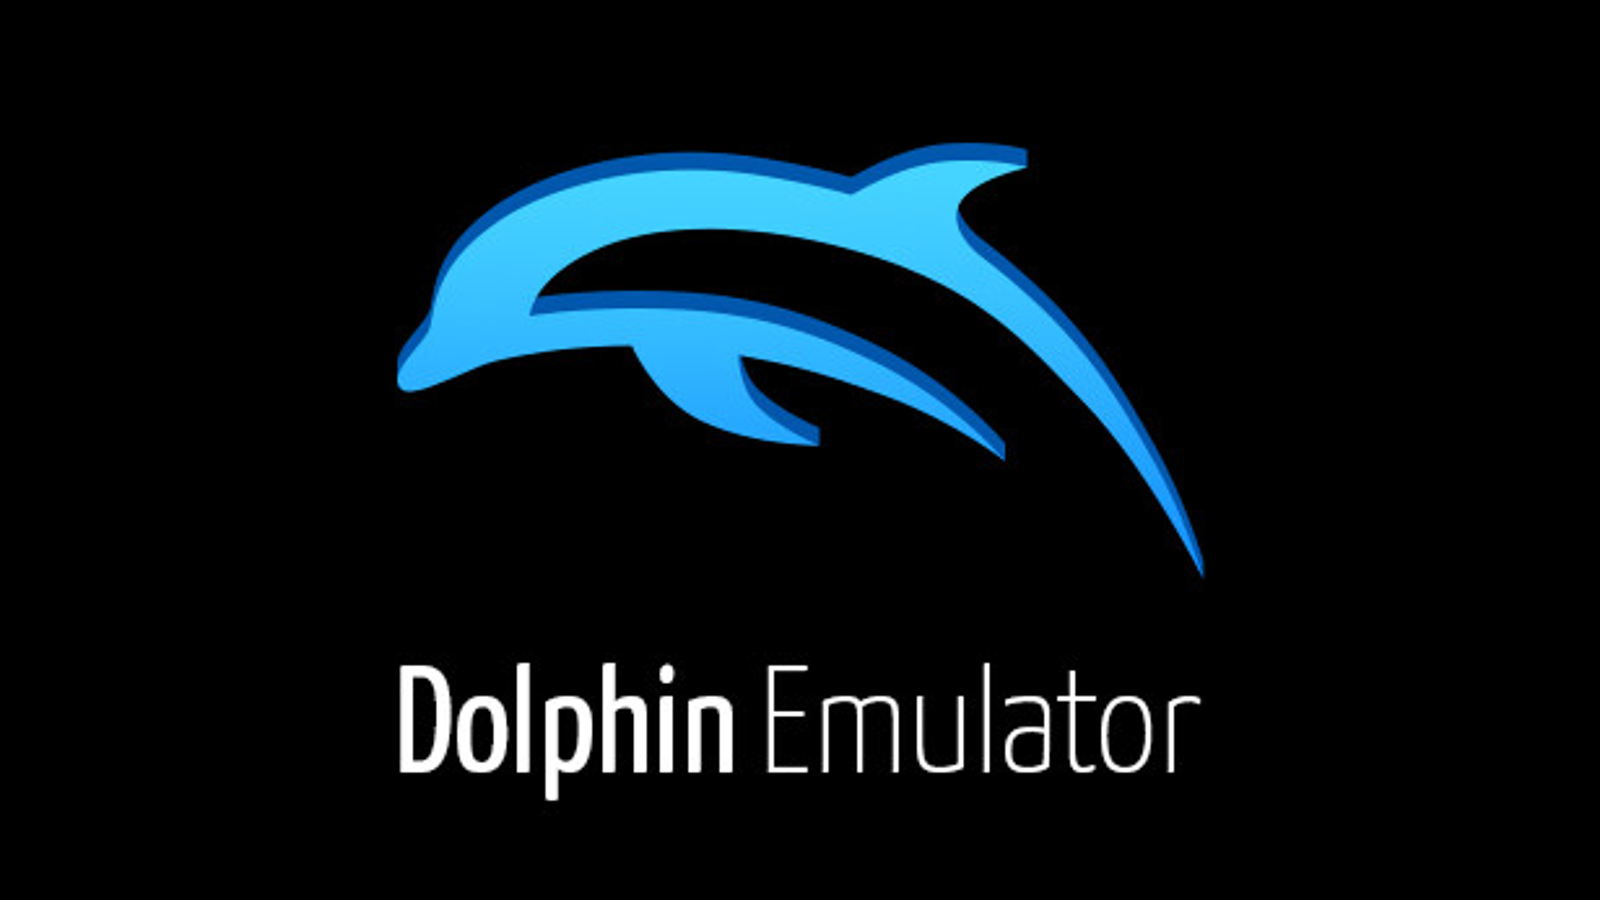 Nintendo impede o lançamento do emulador Dolphin na Steam